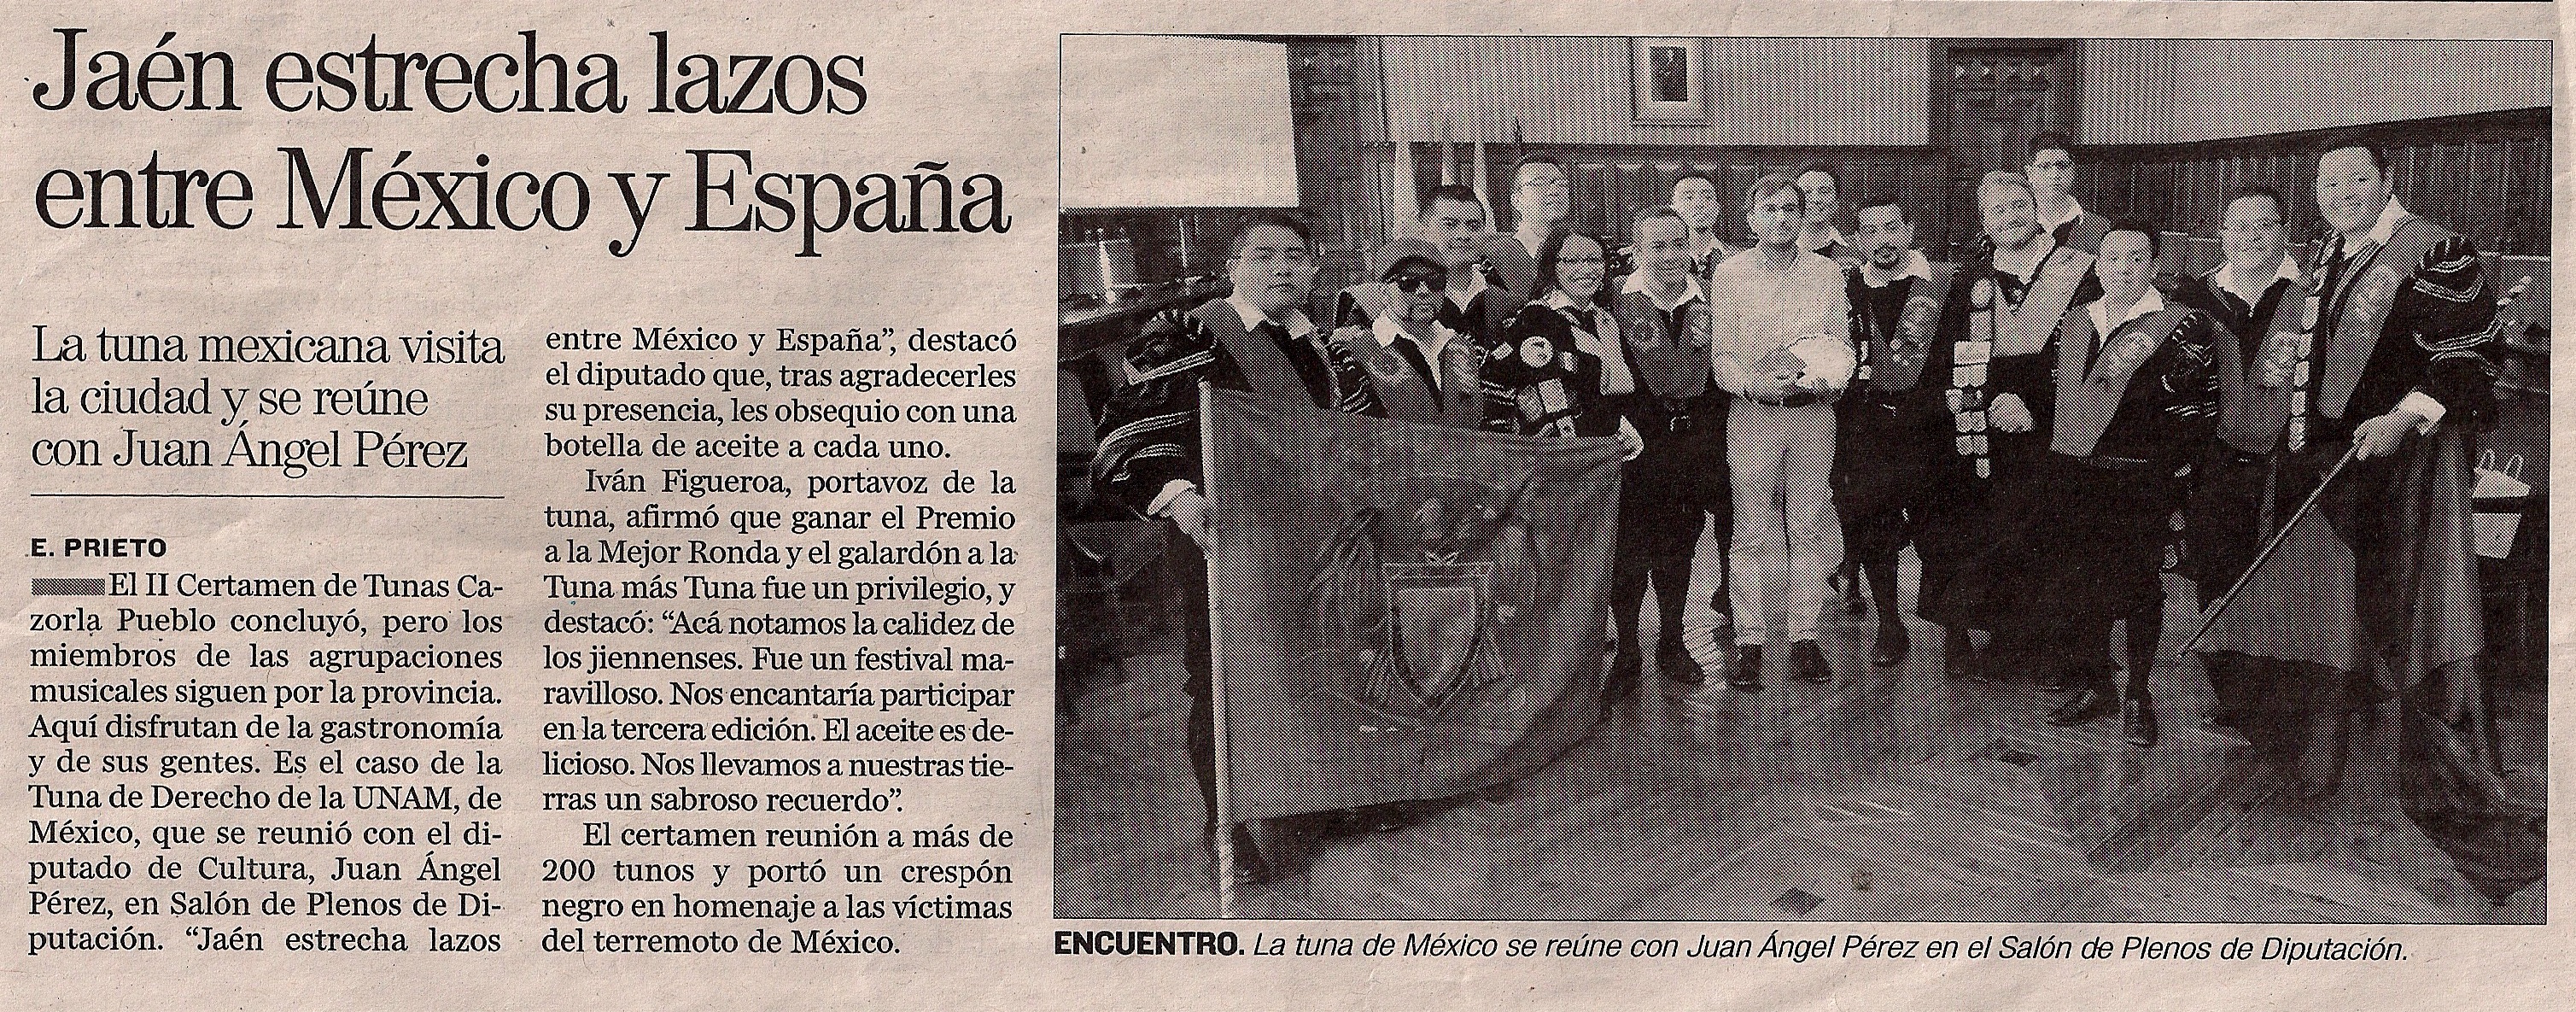 Diario Jaén 5 de Octubre 2017